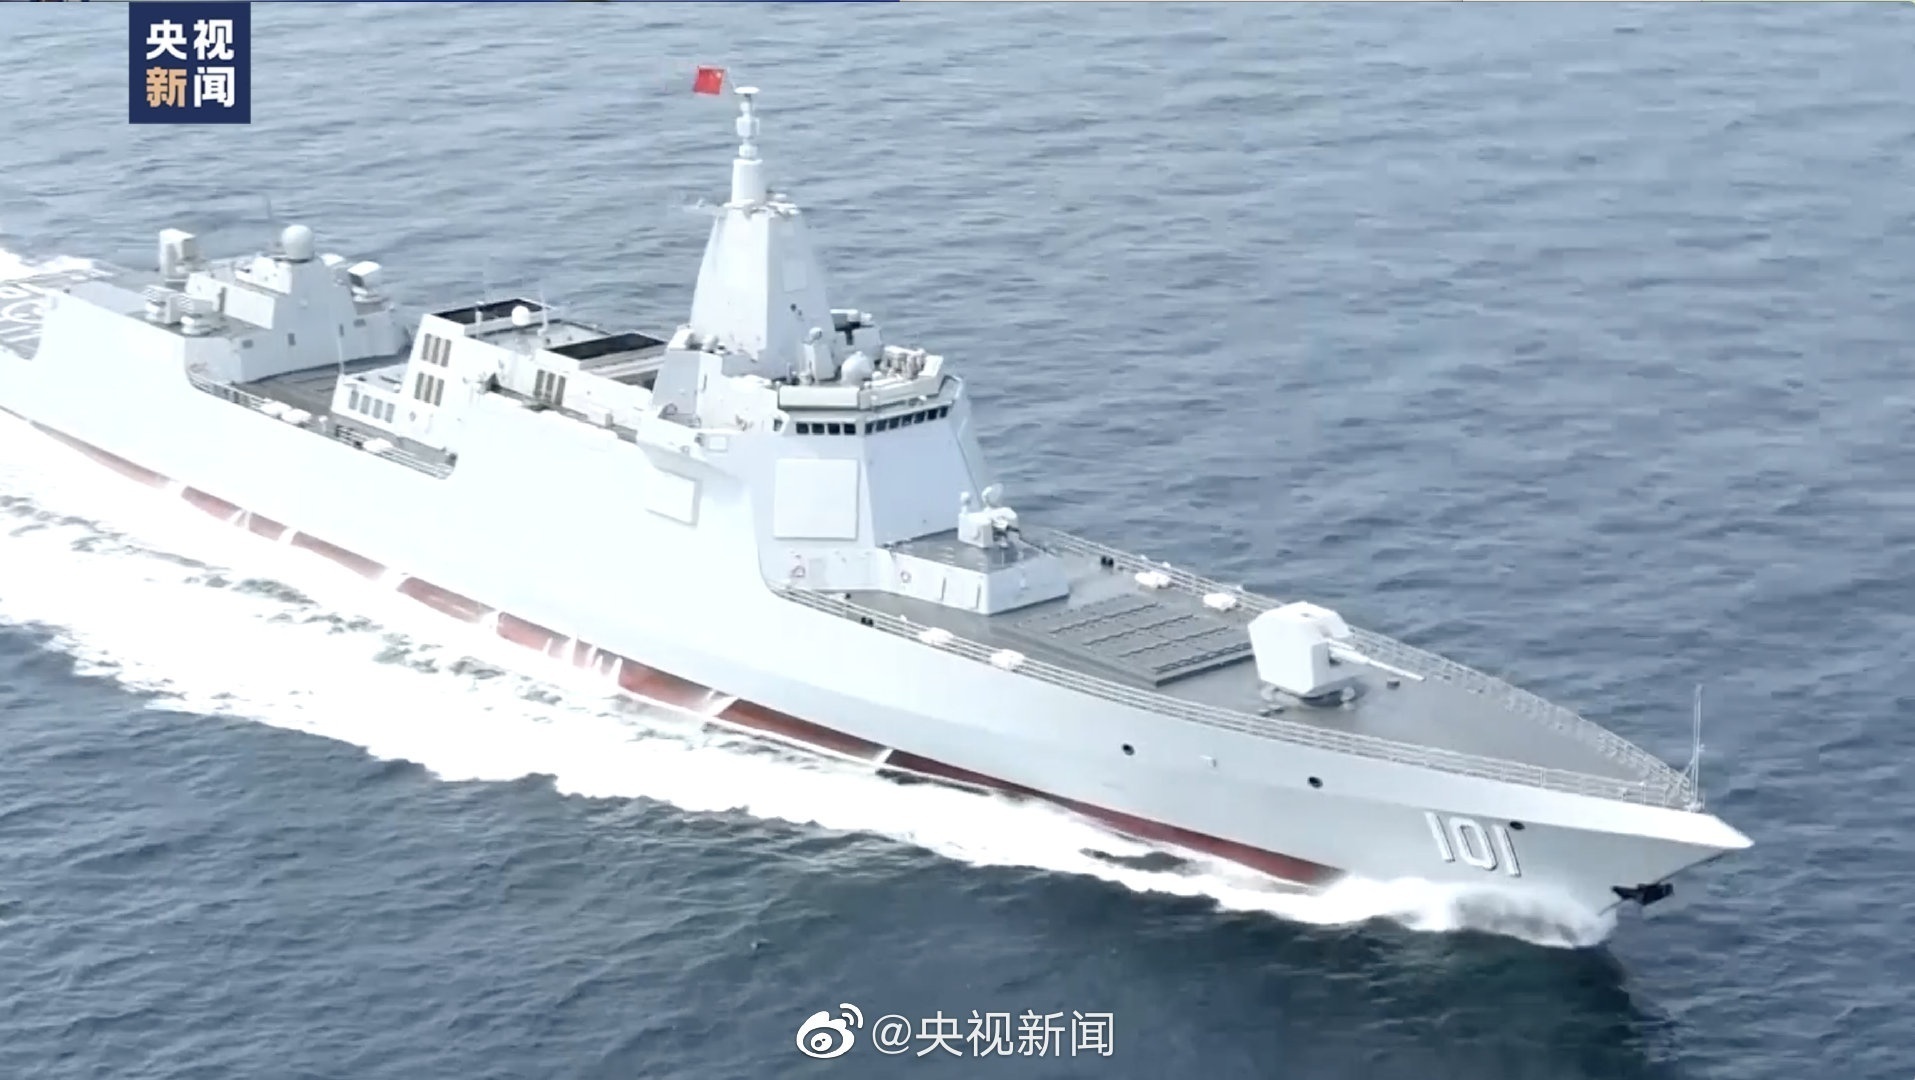 来了!海军055型万吨级驱逐舰南昌舰在青岛正式入列